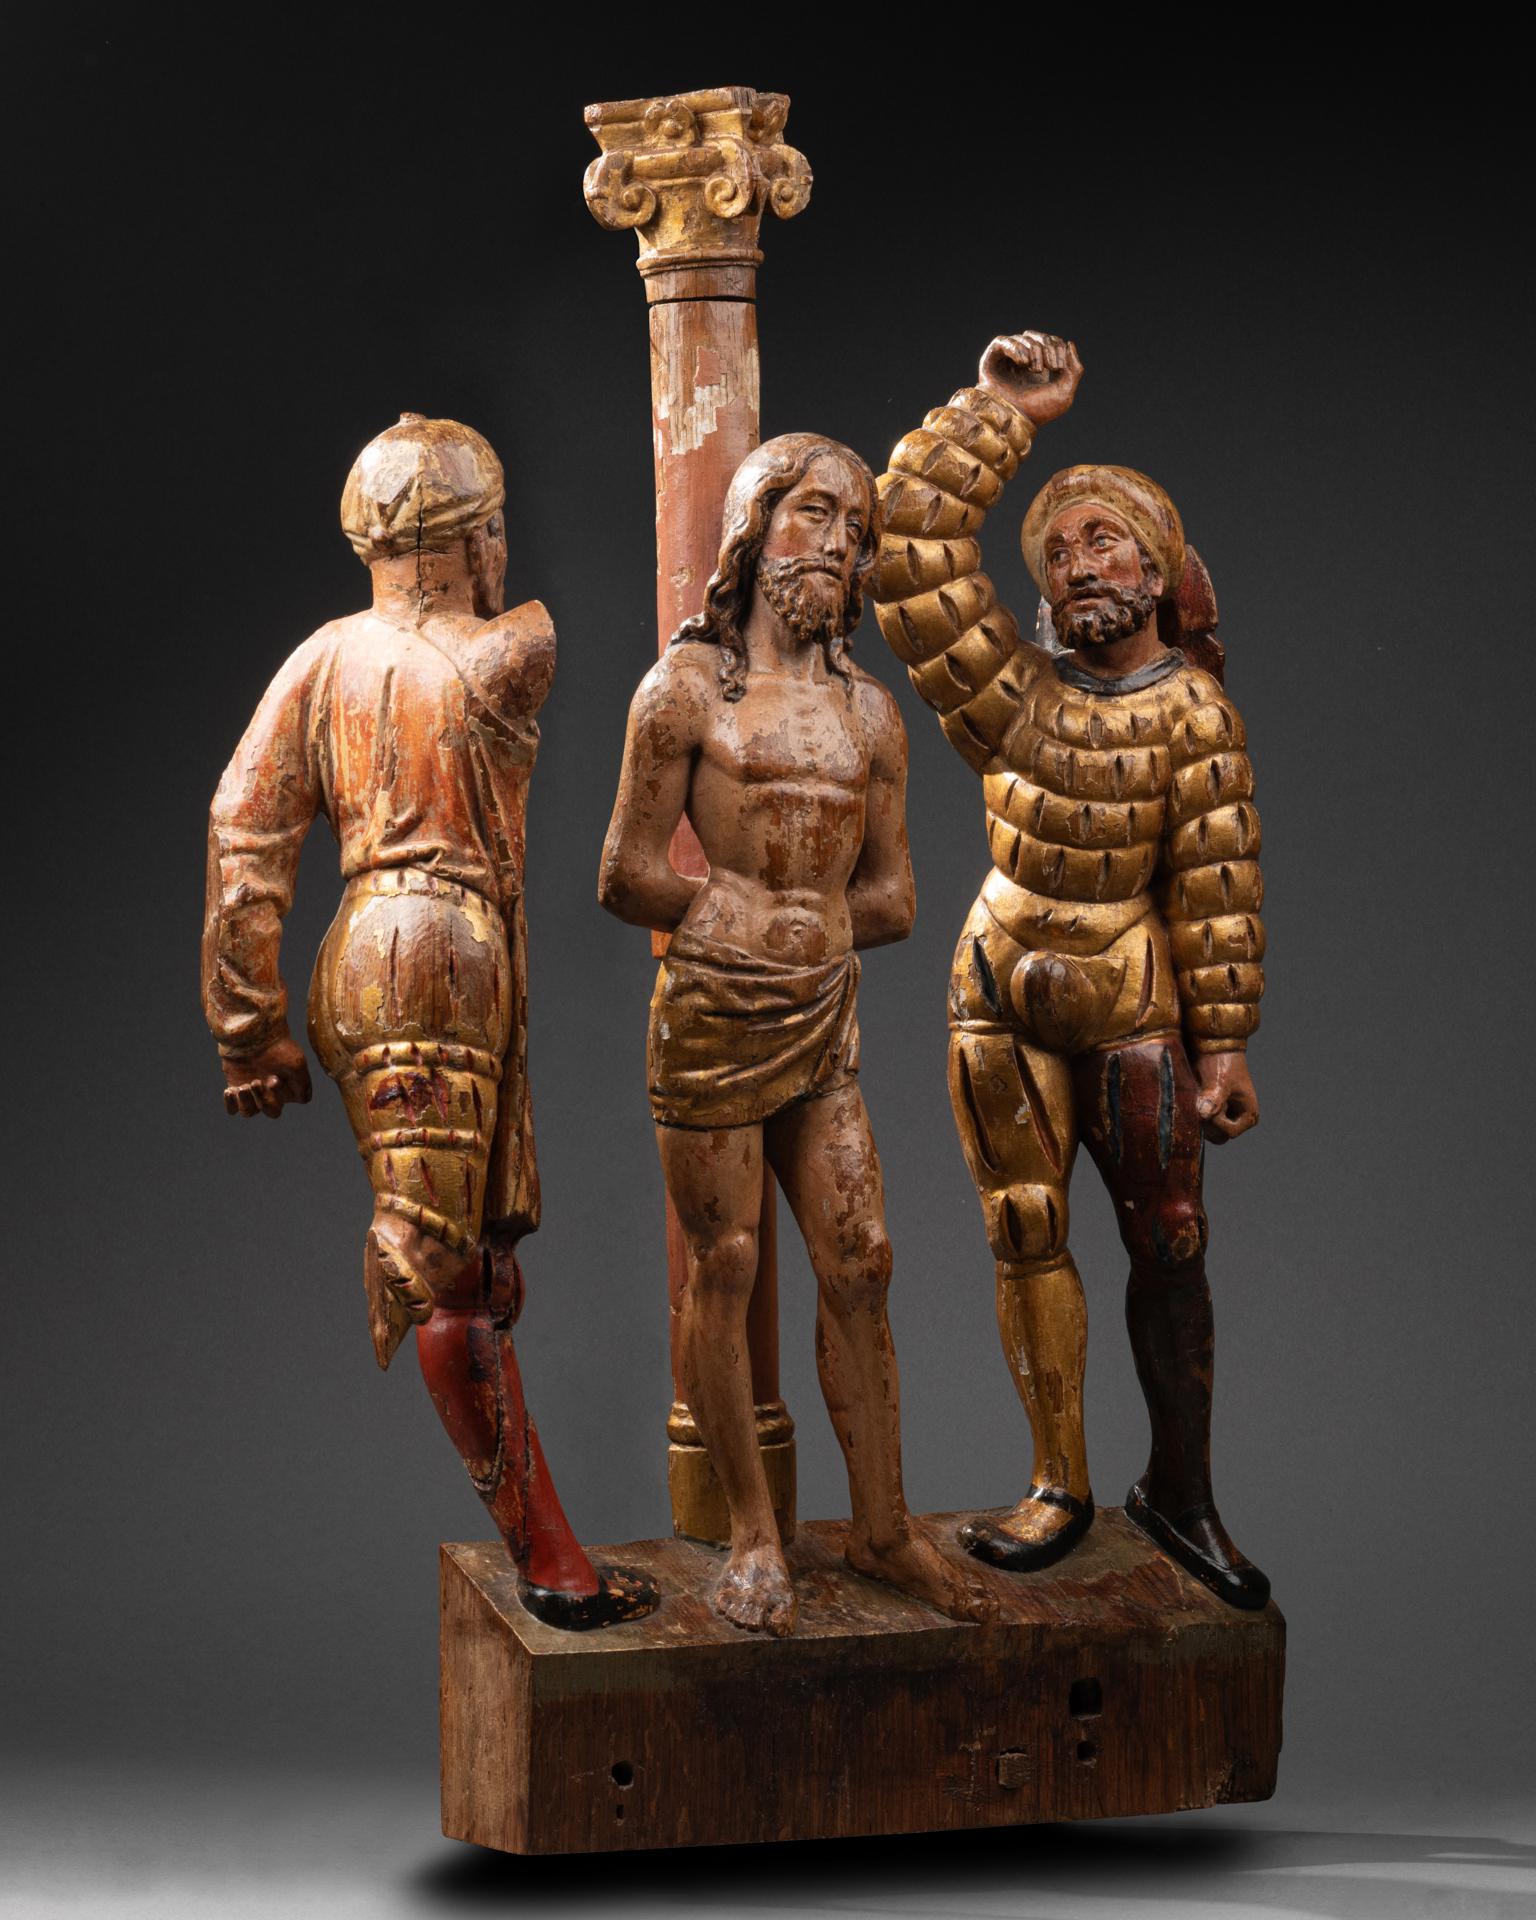 Altarbildgruppe mit der Darstellung der Geißelung
Brabant, um 1560-1580
Holz geschnitzt, polychrom und vergoldet
50 x 38 x 7 cm

In der Mitte der Gruppe steht Christus aufrecht an die Säule gelehnt, die Handgelenke hinter dem Rücken gefesselt, das